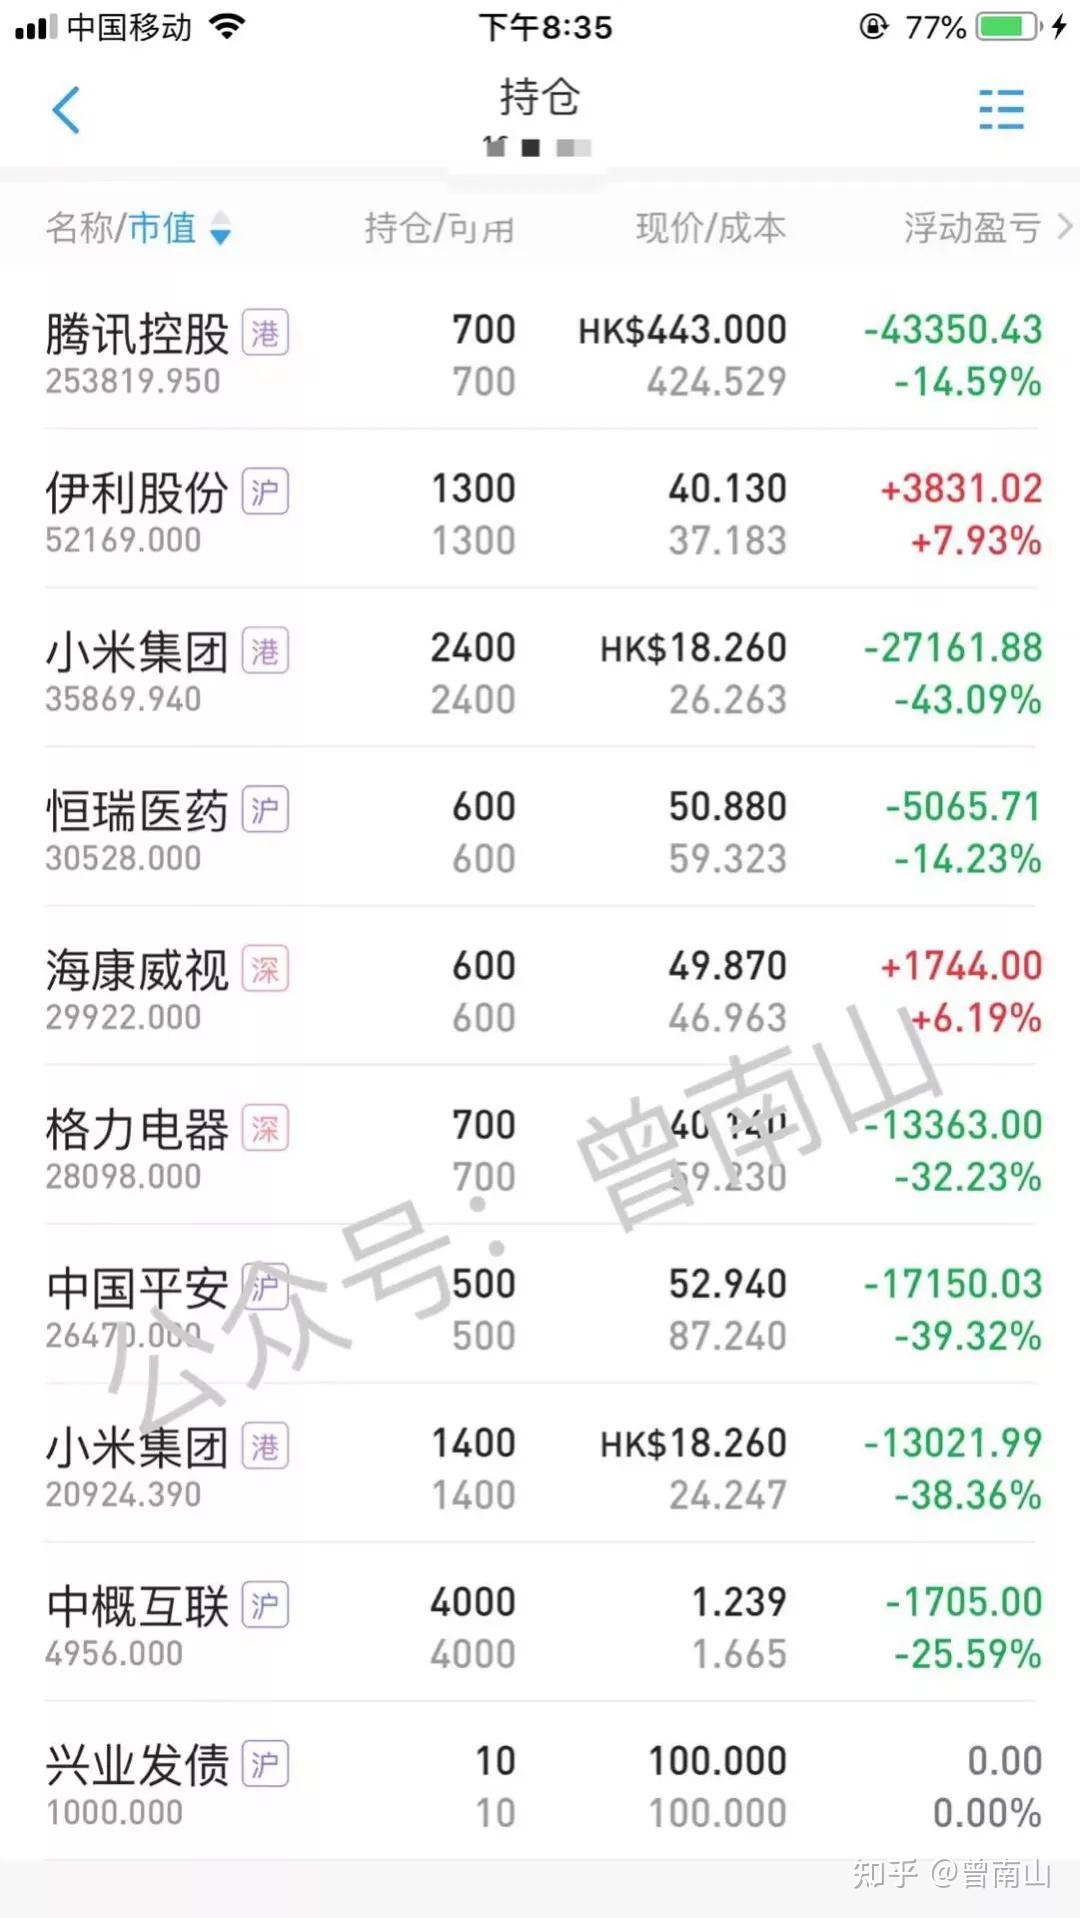 小米集团(12%)1:腾讯控股(52%)当前股票持仓:3:景顺长城鼎